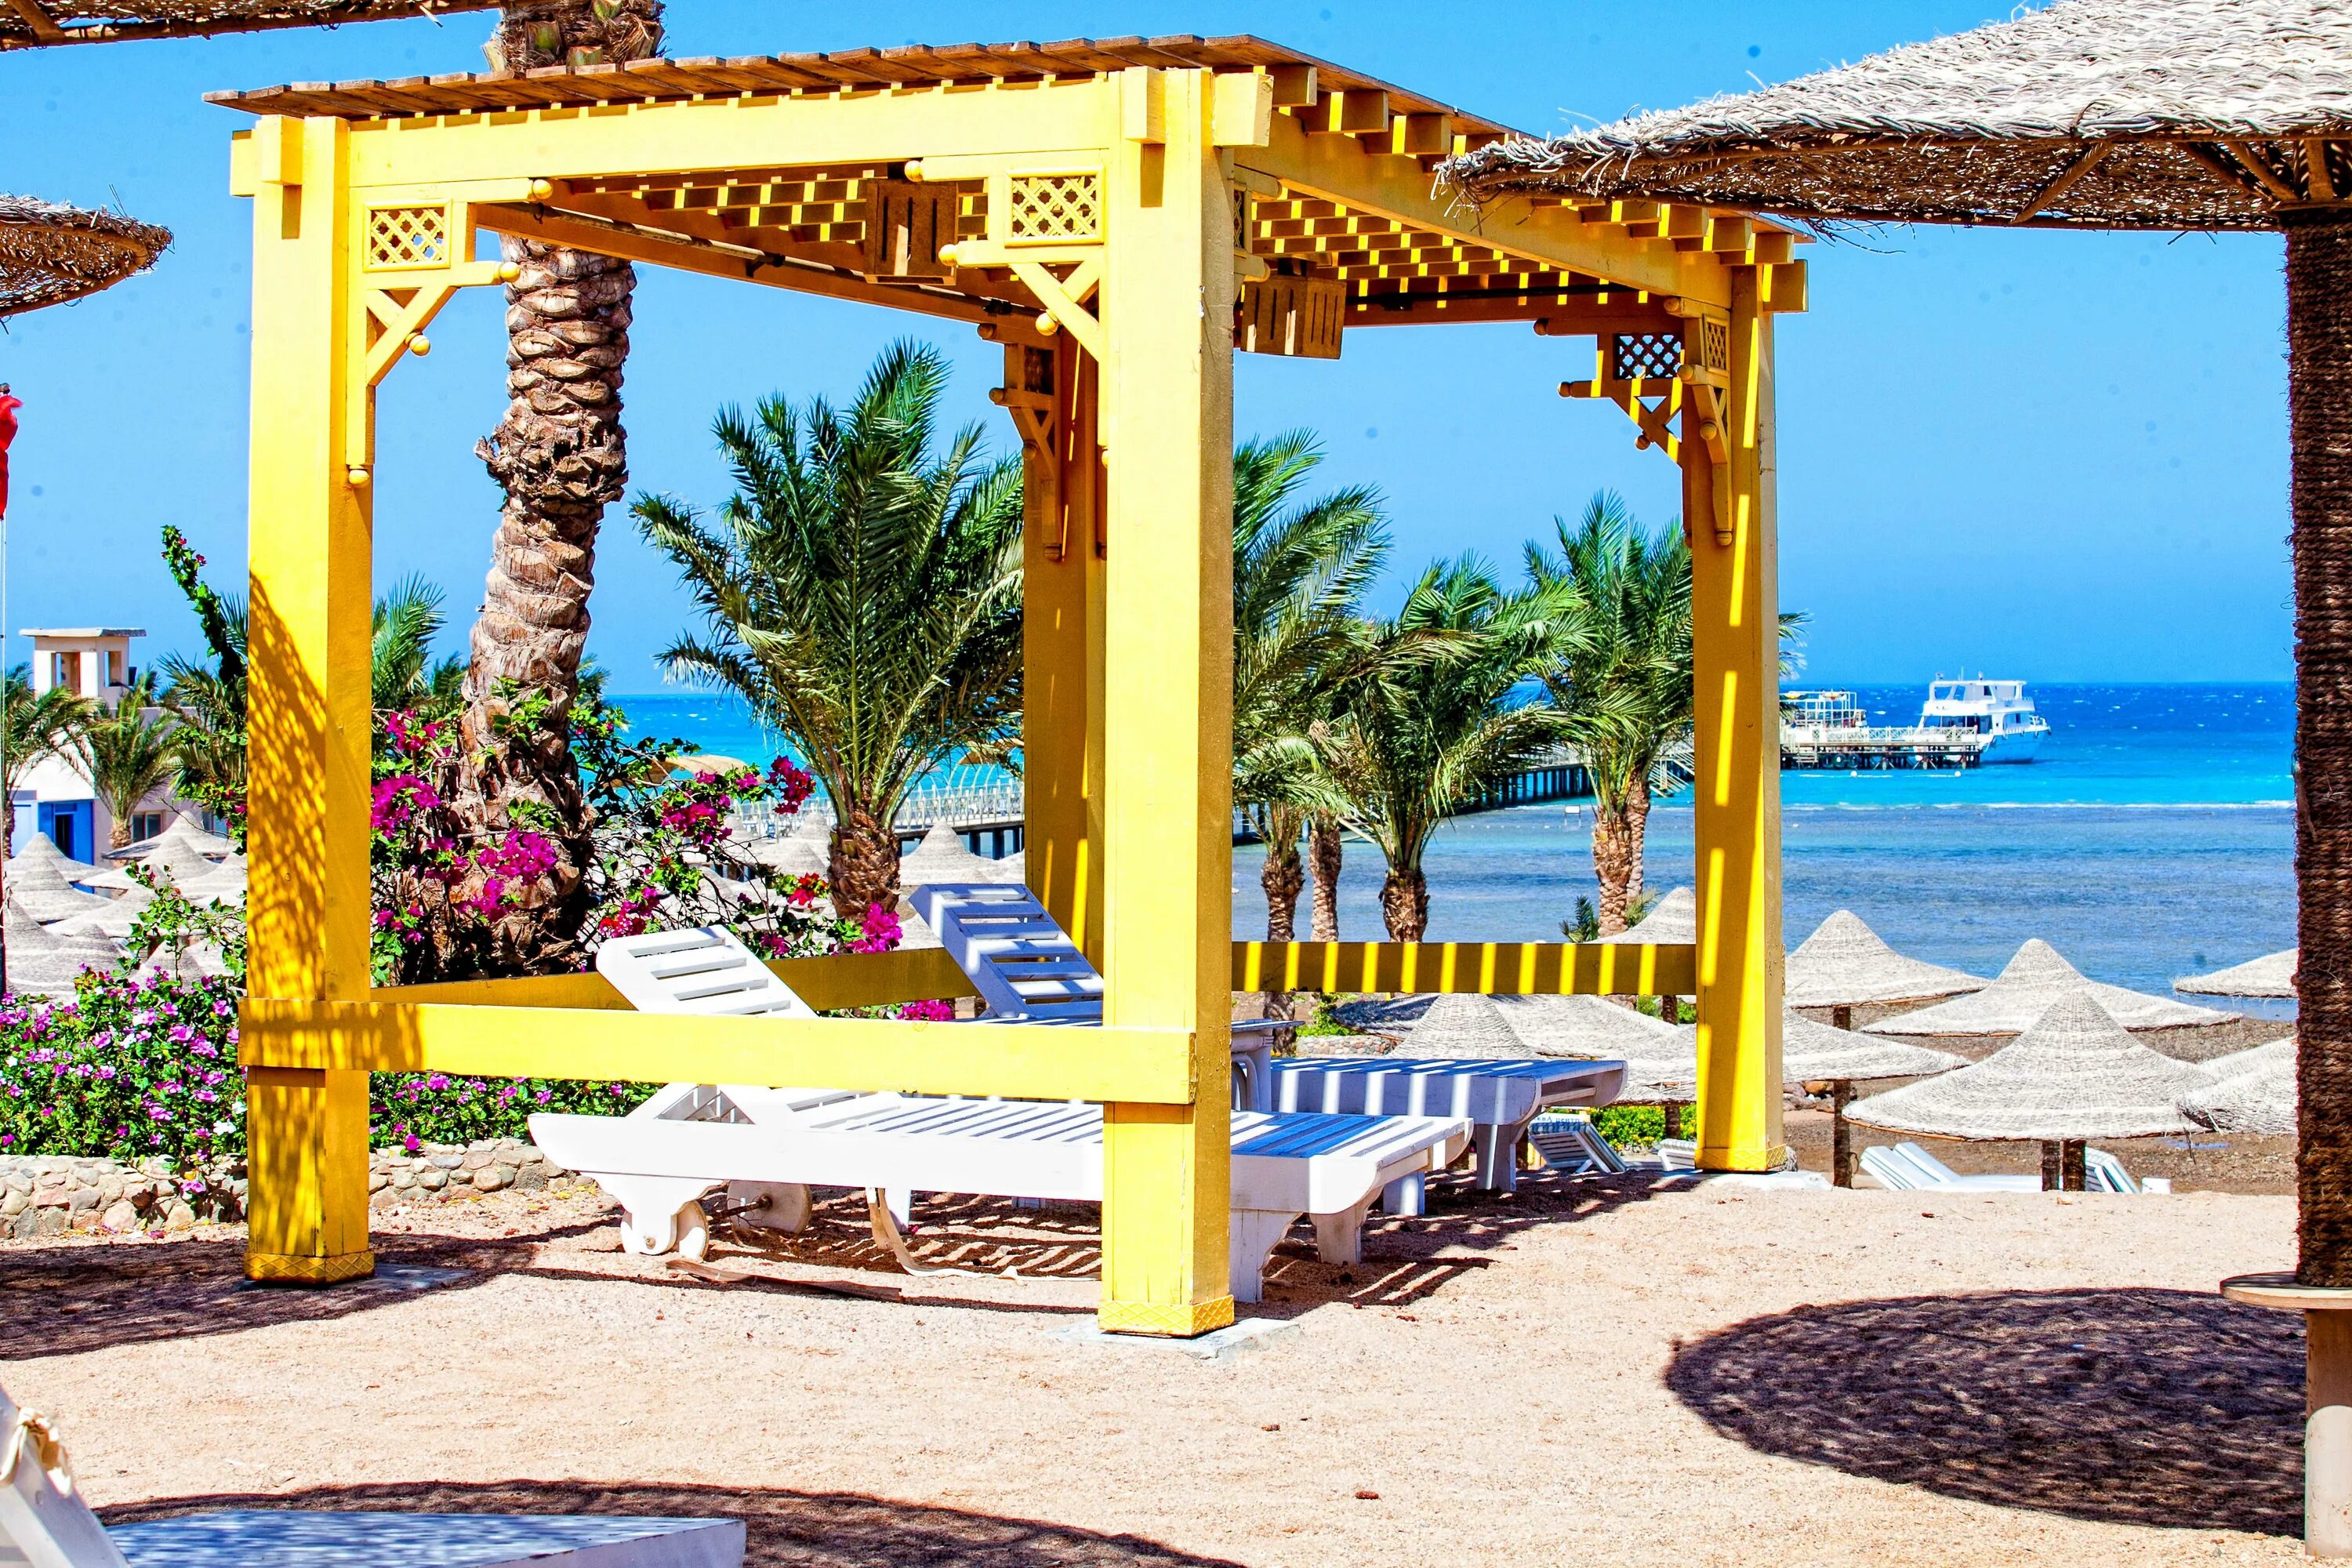 Египет,Хургада,Nubia Aqua Beach Resort. Нубия Аква Бич Резорт 4. Nubia Aqua Resort 5 Египет Хургада. Нубия Египет отель. El karma aqua beach resort 4 египет